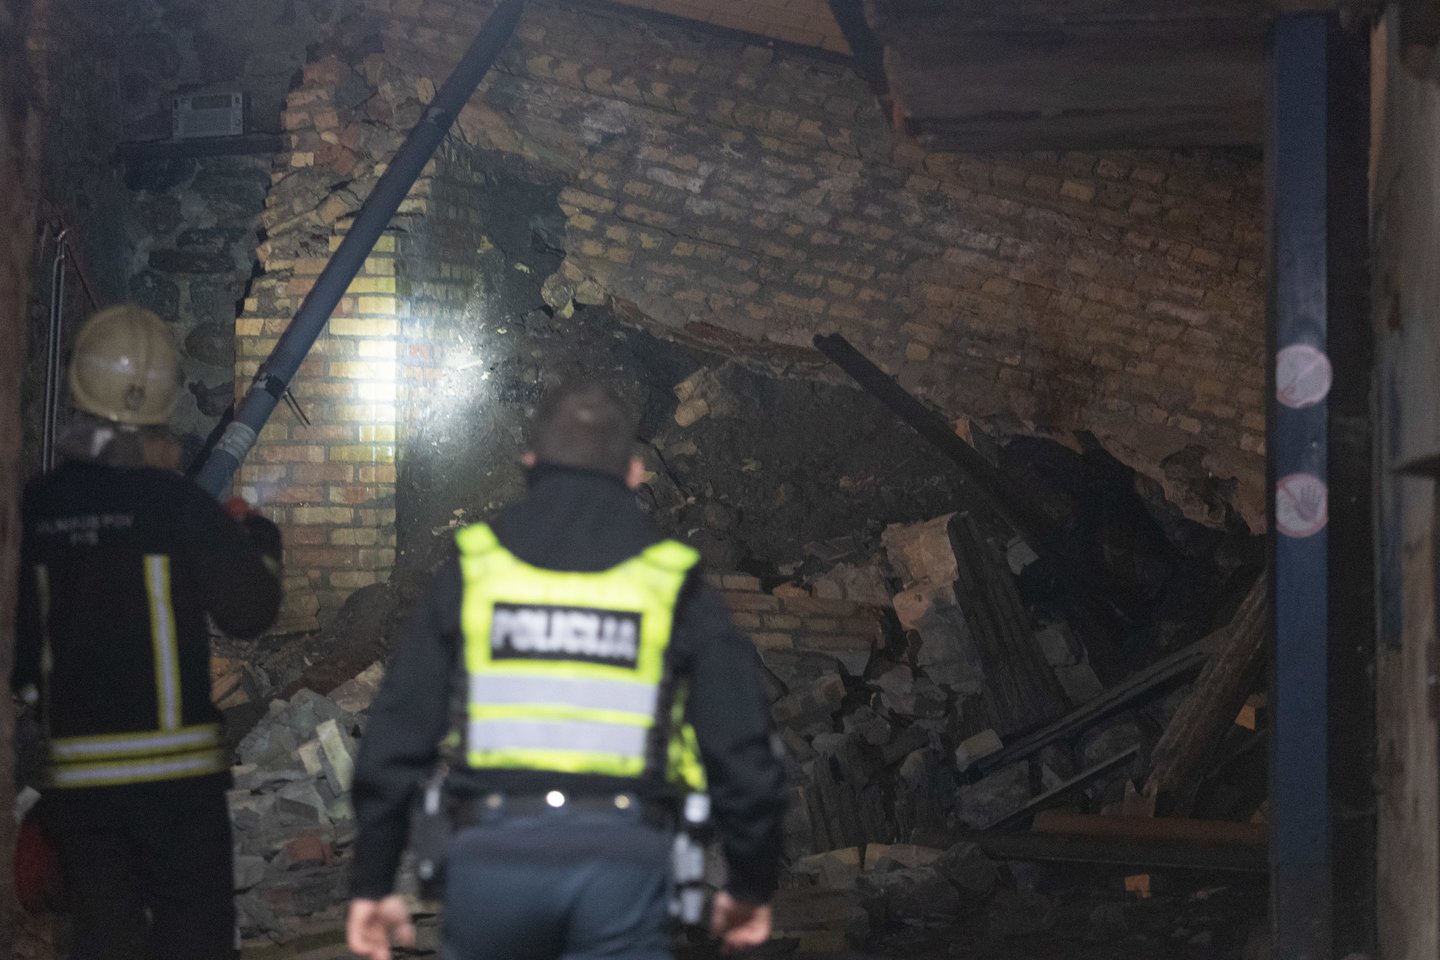 Penktadienio vakarą gauta informacija apie įvykusią atraminės sienos ir šalia esančio daugiabučio gyvenamojo namo avariją Vilniuje, Užupio gatvėje.<br>Andriaus Ufarto (ELTA) nuotr.